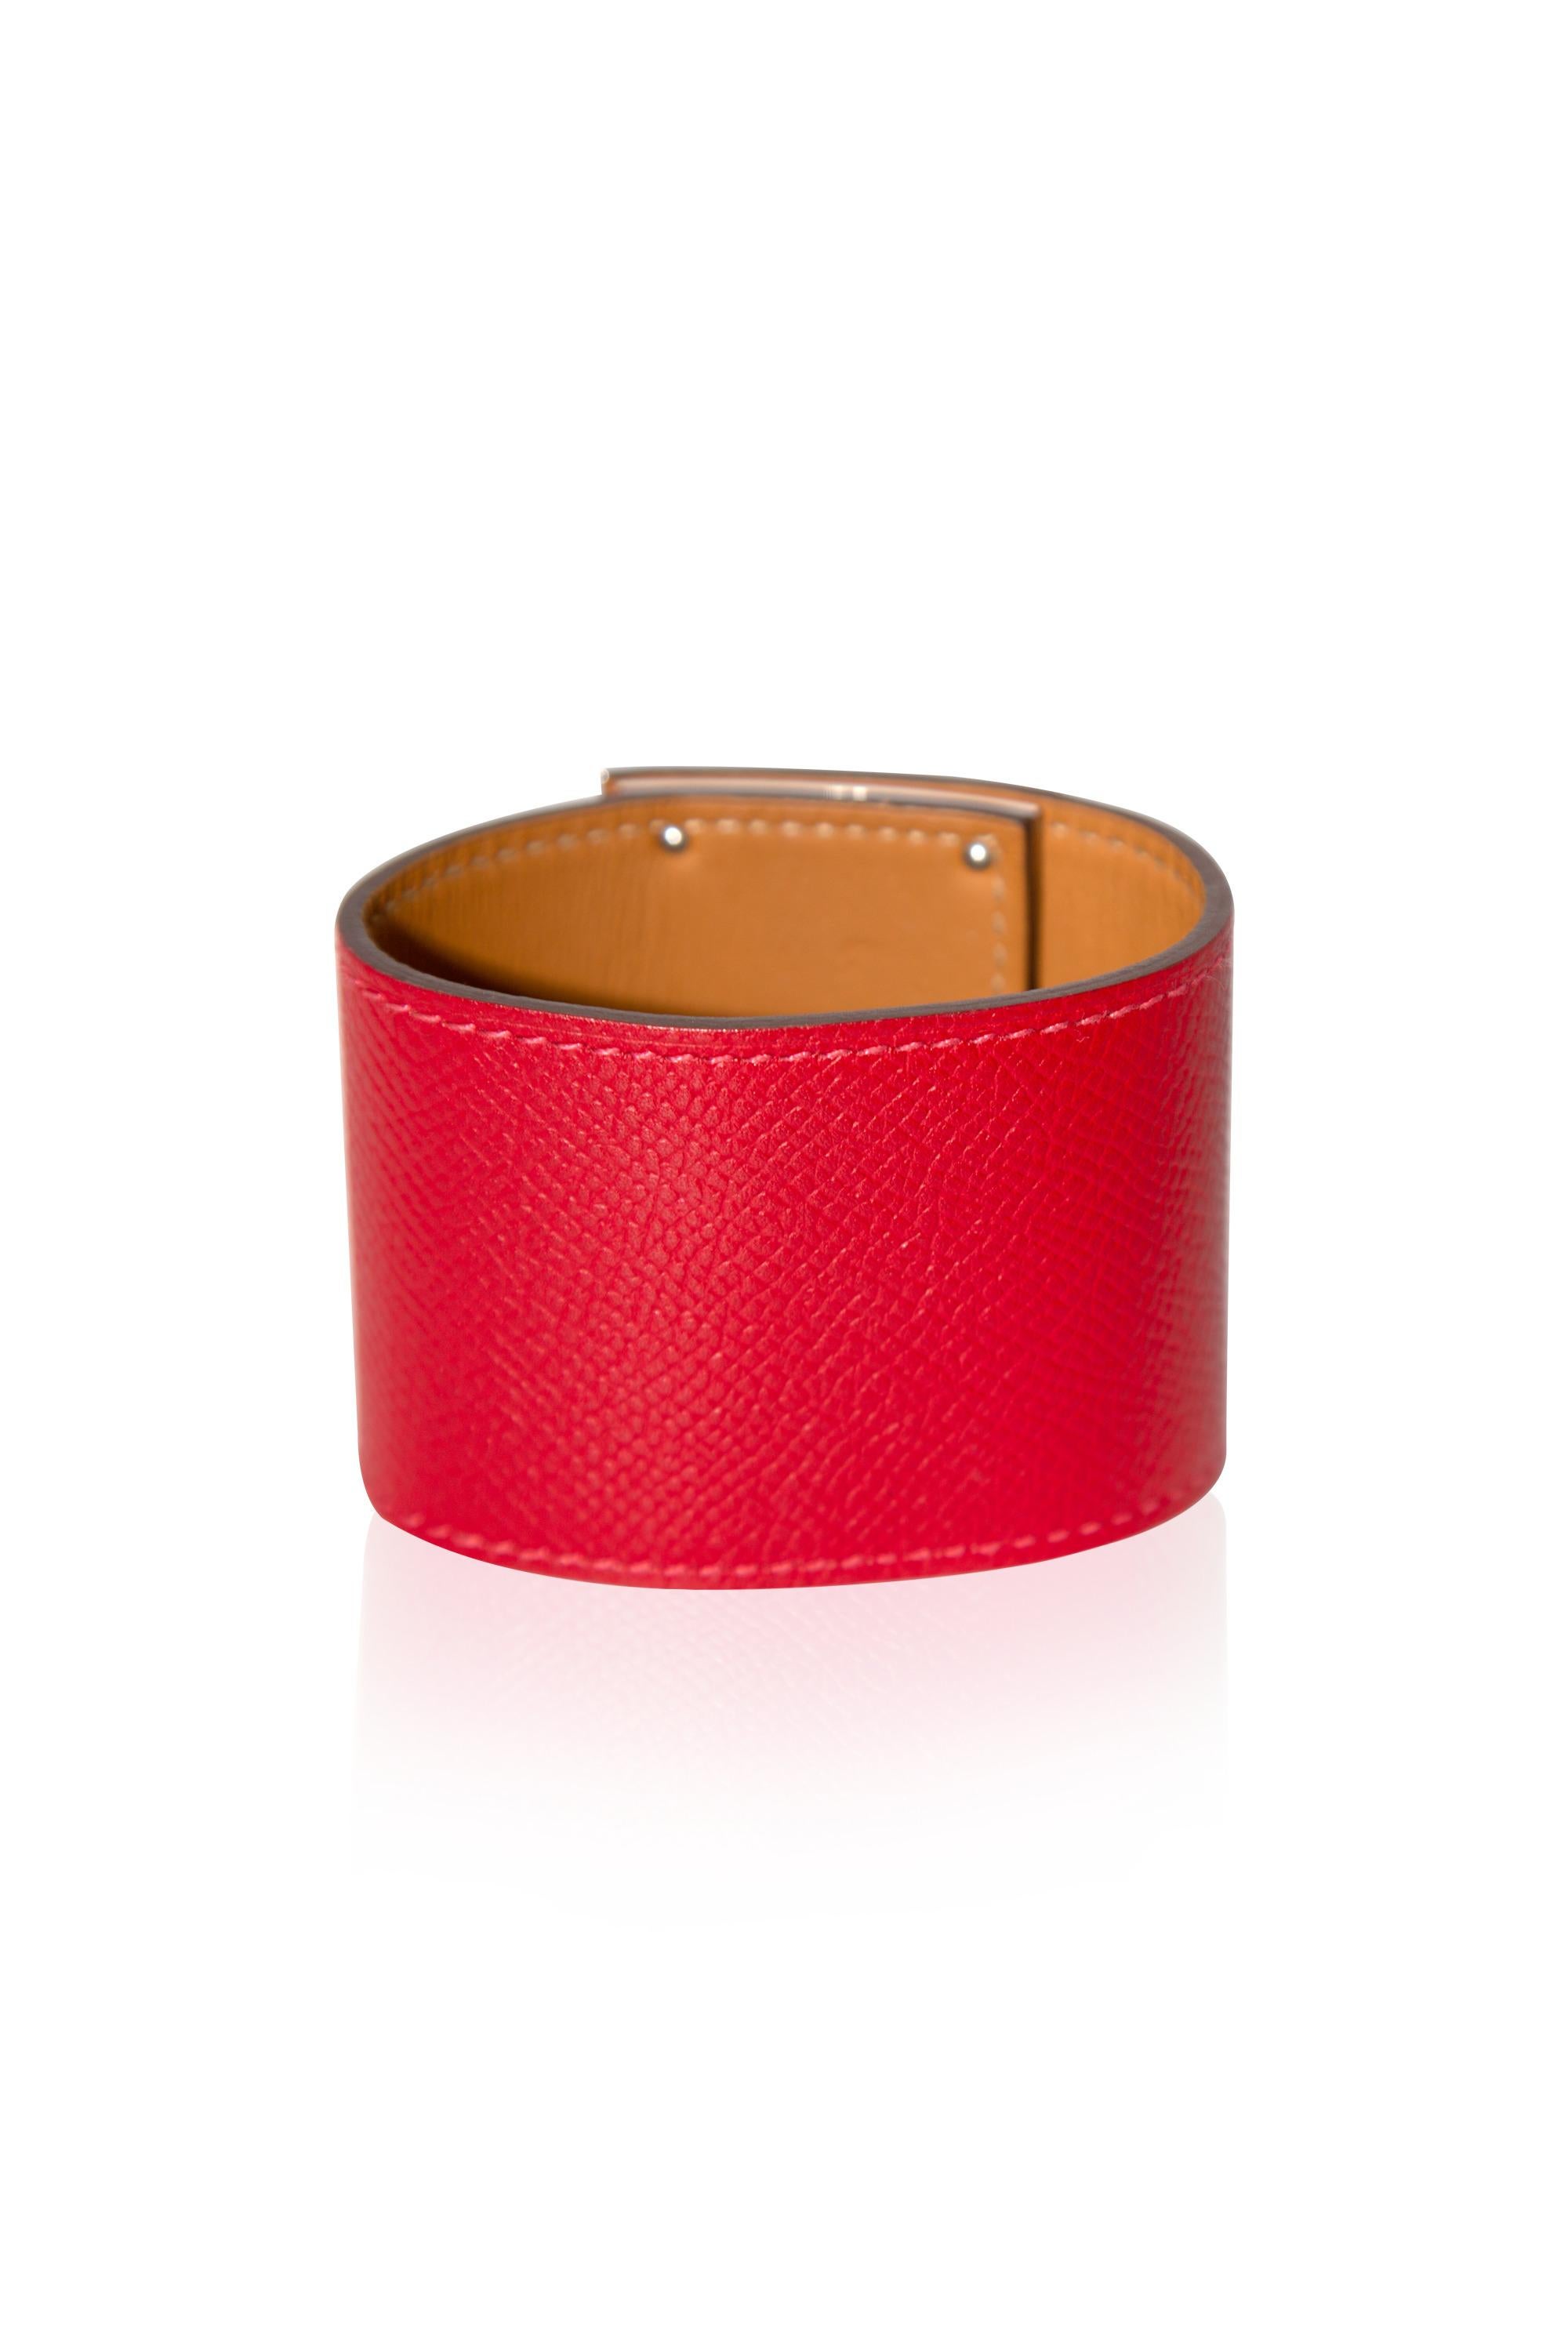 Das Kelly Dog Extreme Armband in Epsom Red PHW von Hermès ist ein elegantes und stilvolles Accessoire, das jedem Outfit einen Hauch von Luxus verleiht.

- •Bittersüßes Leder
- •Palladium-Hardware
- •Ikonisches Kelly Dog Design und goldglänzende